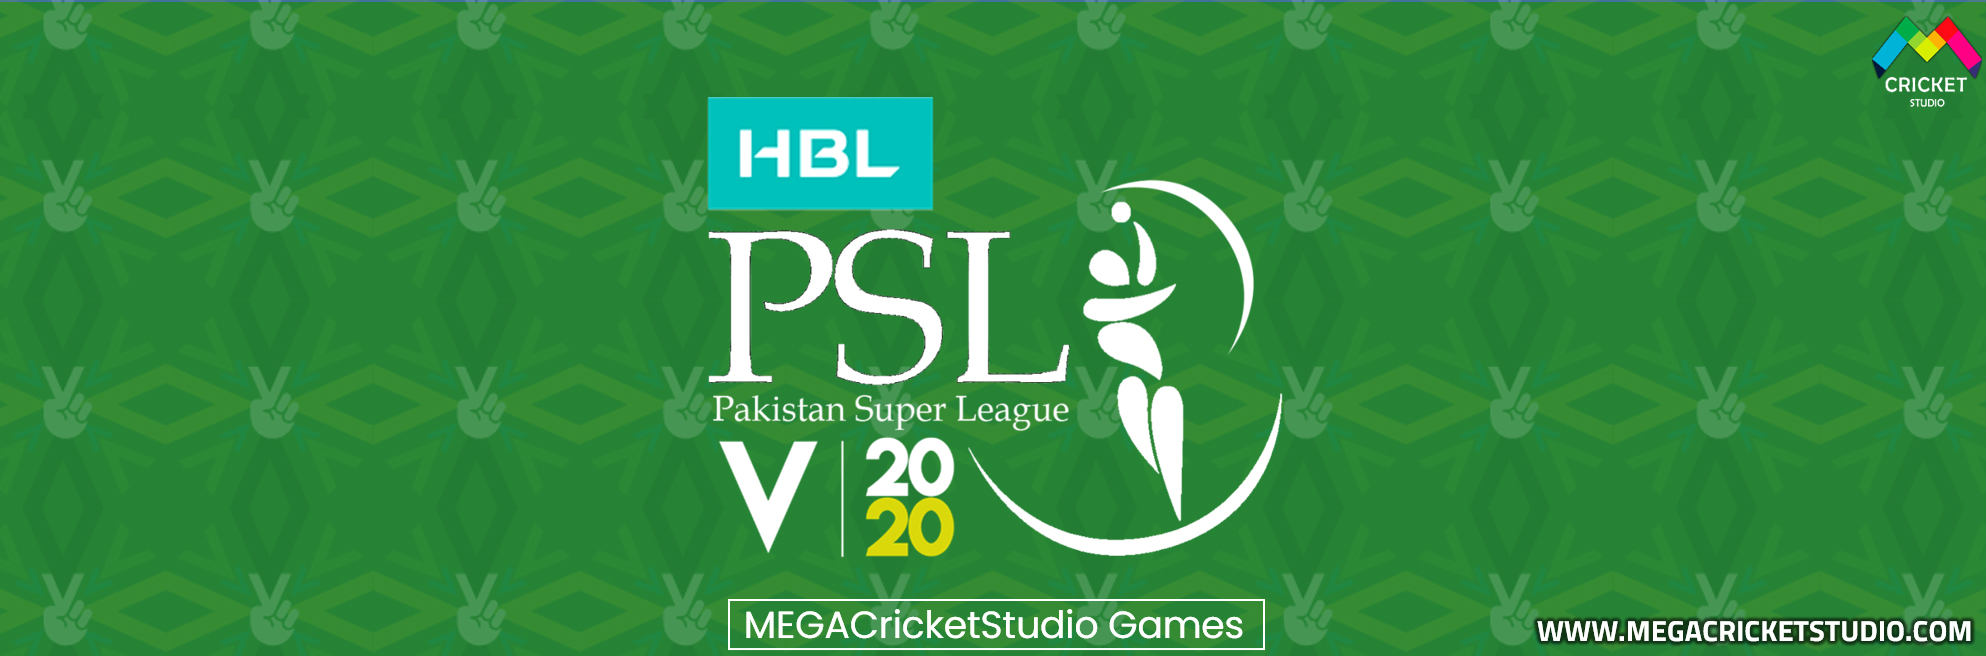 PSL5 Pakistan Super League 2020 Patch for EA Cricket 07